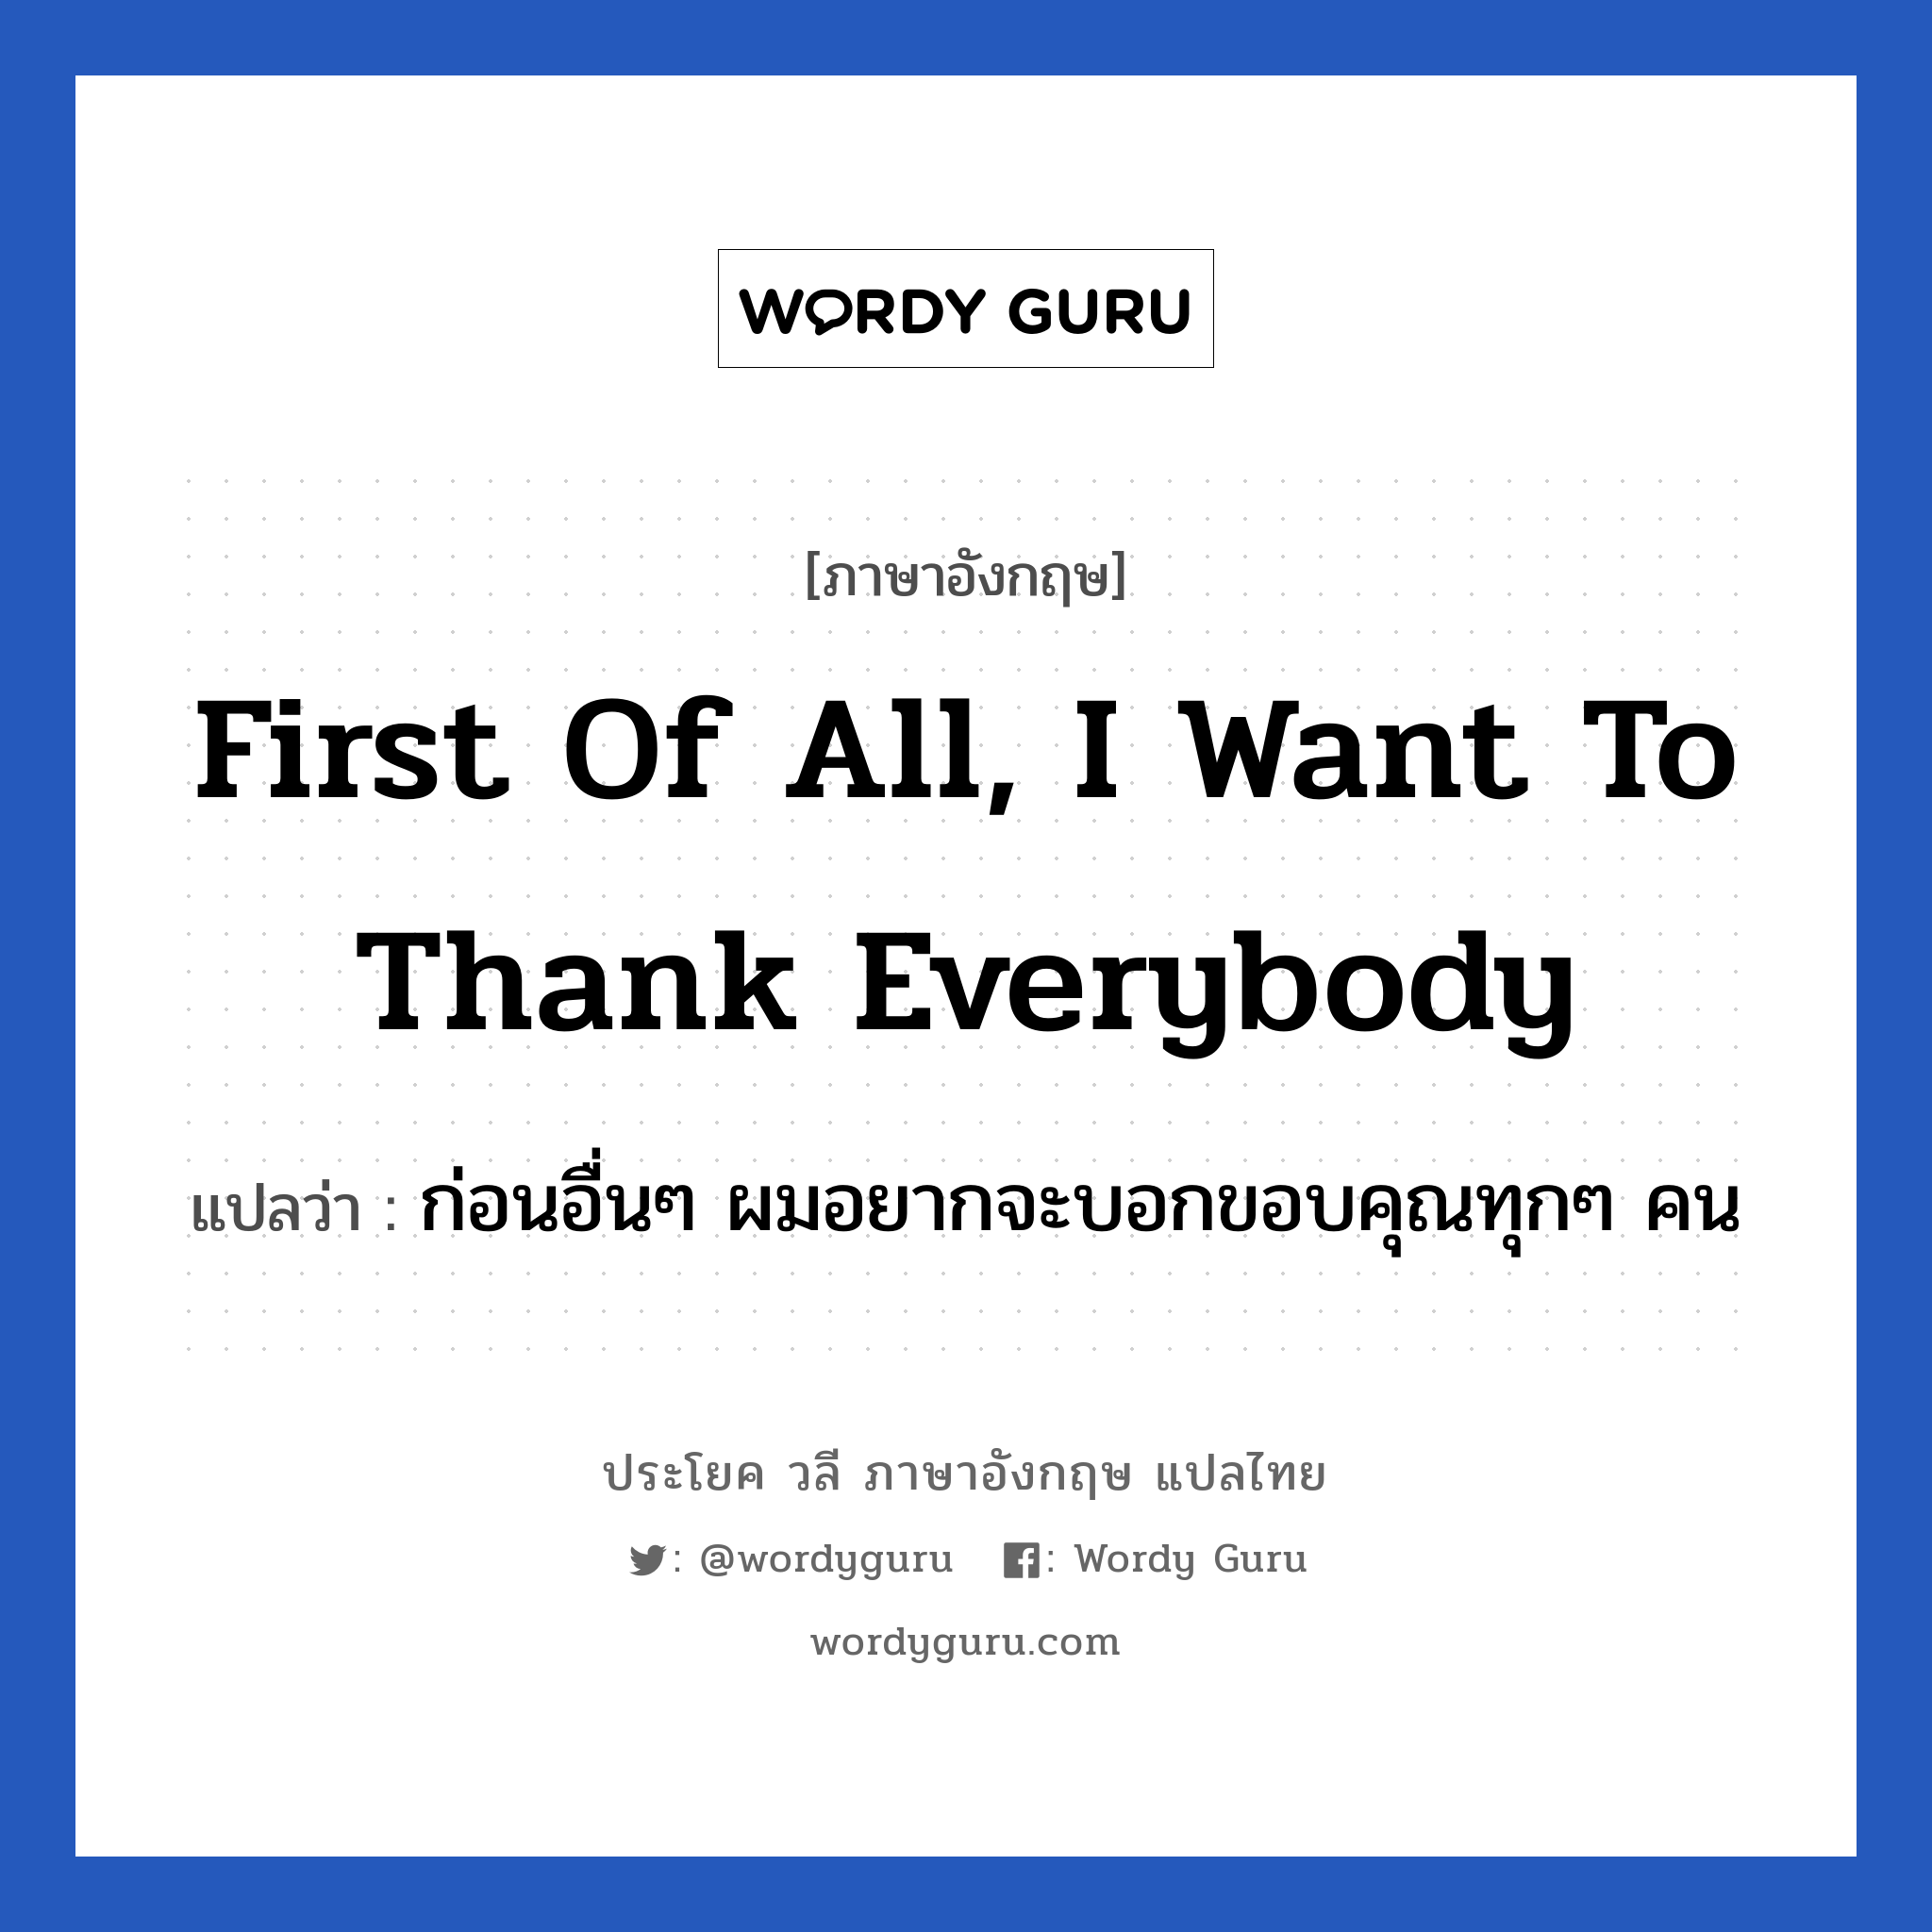 First of all, I want to thank everybody แปลว่า?, วลีภาษาอังกฤษ First of all, I want to thank everybody แปลว่า ก่อนอื่นๆ ผมอยากจะบอกขอบคุณทุกๆ คน